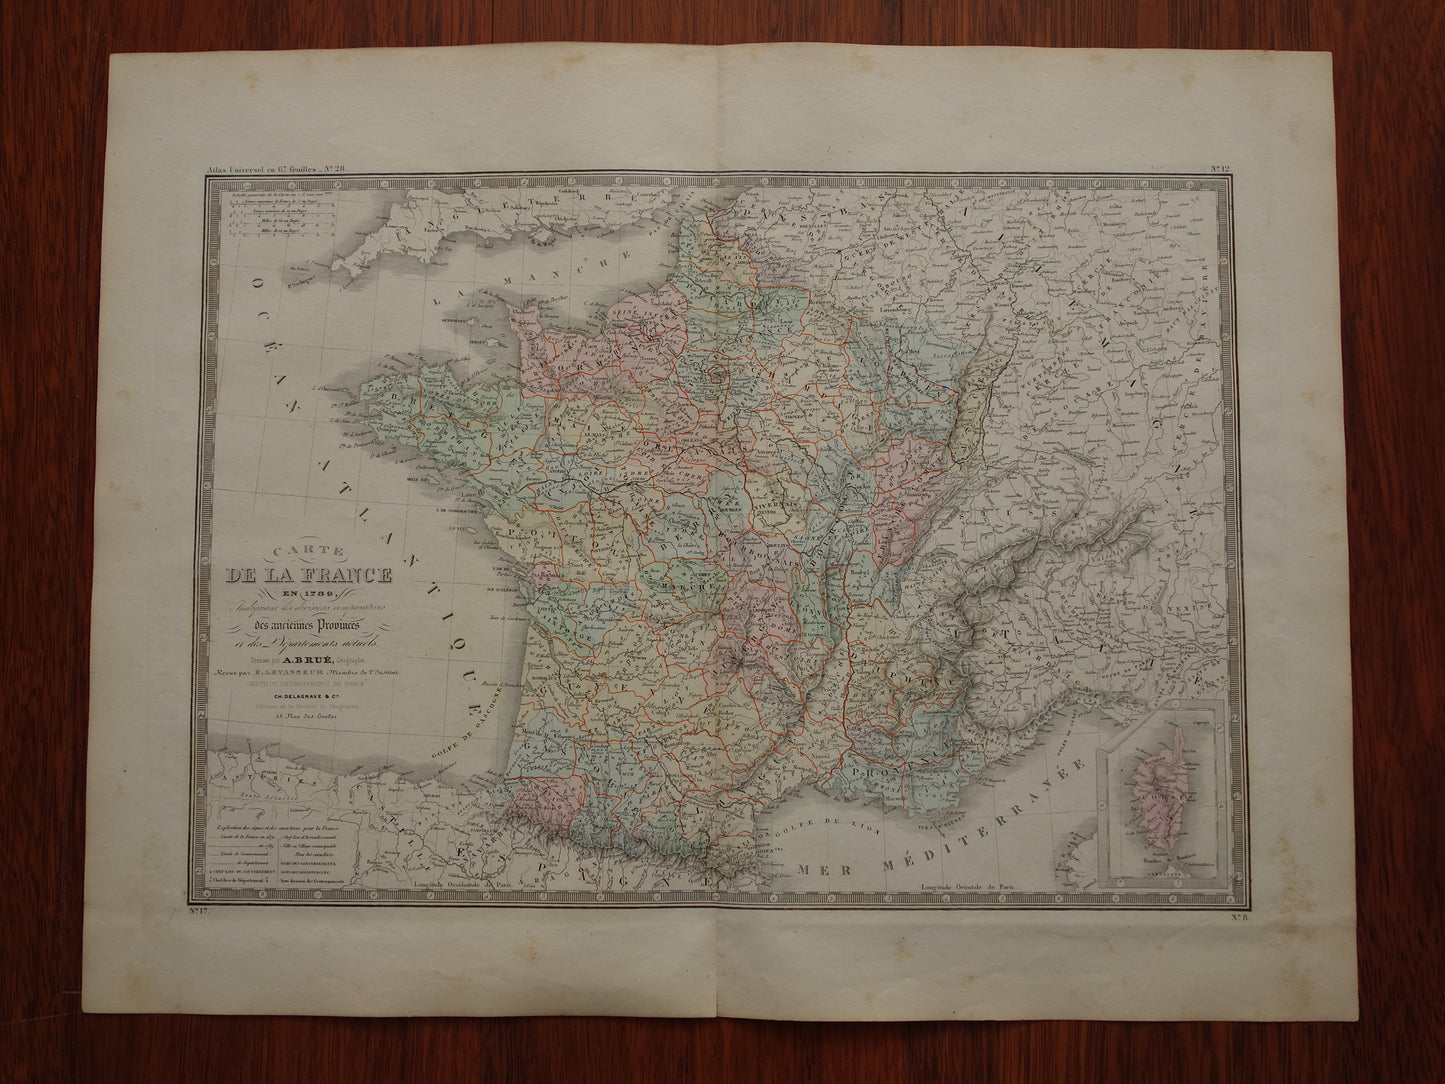 Kaart van Frankrijk in 1789 met oude provincies Antieke grote landkaart start Franse Revolutie